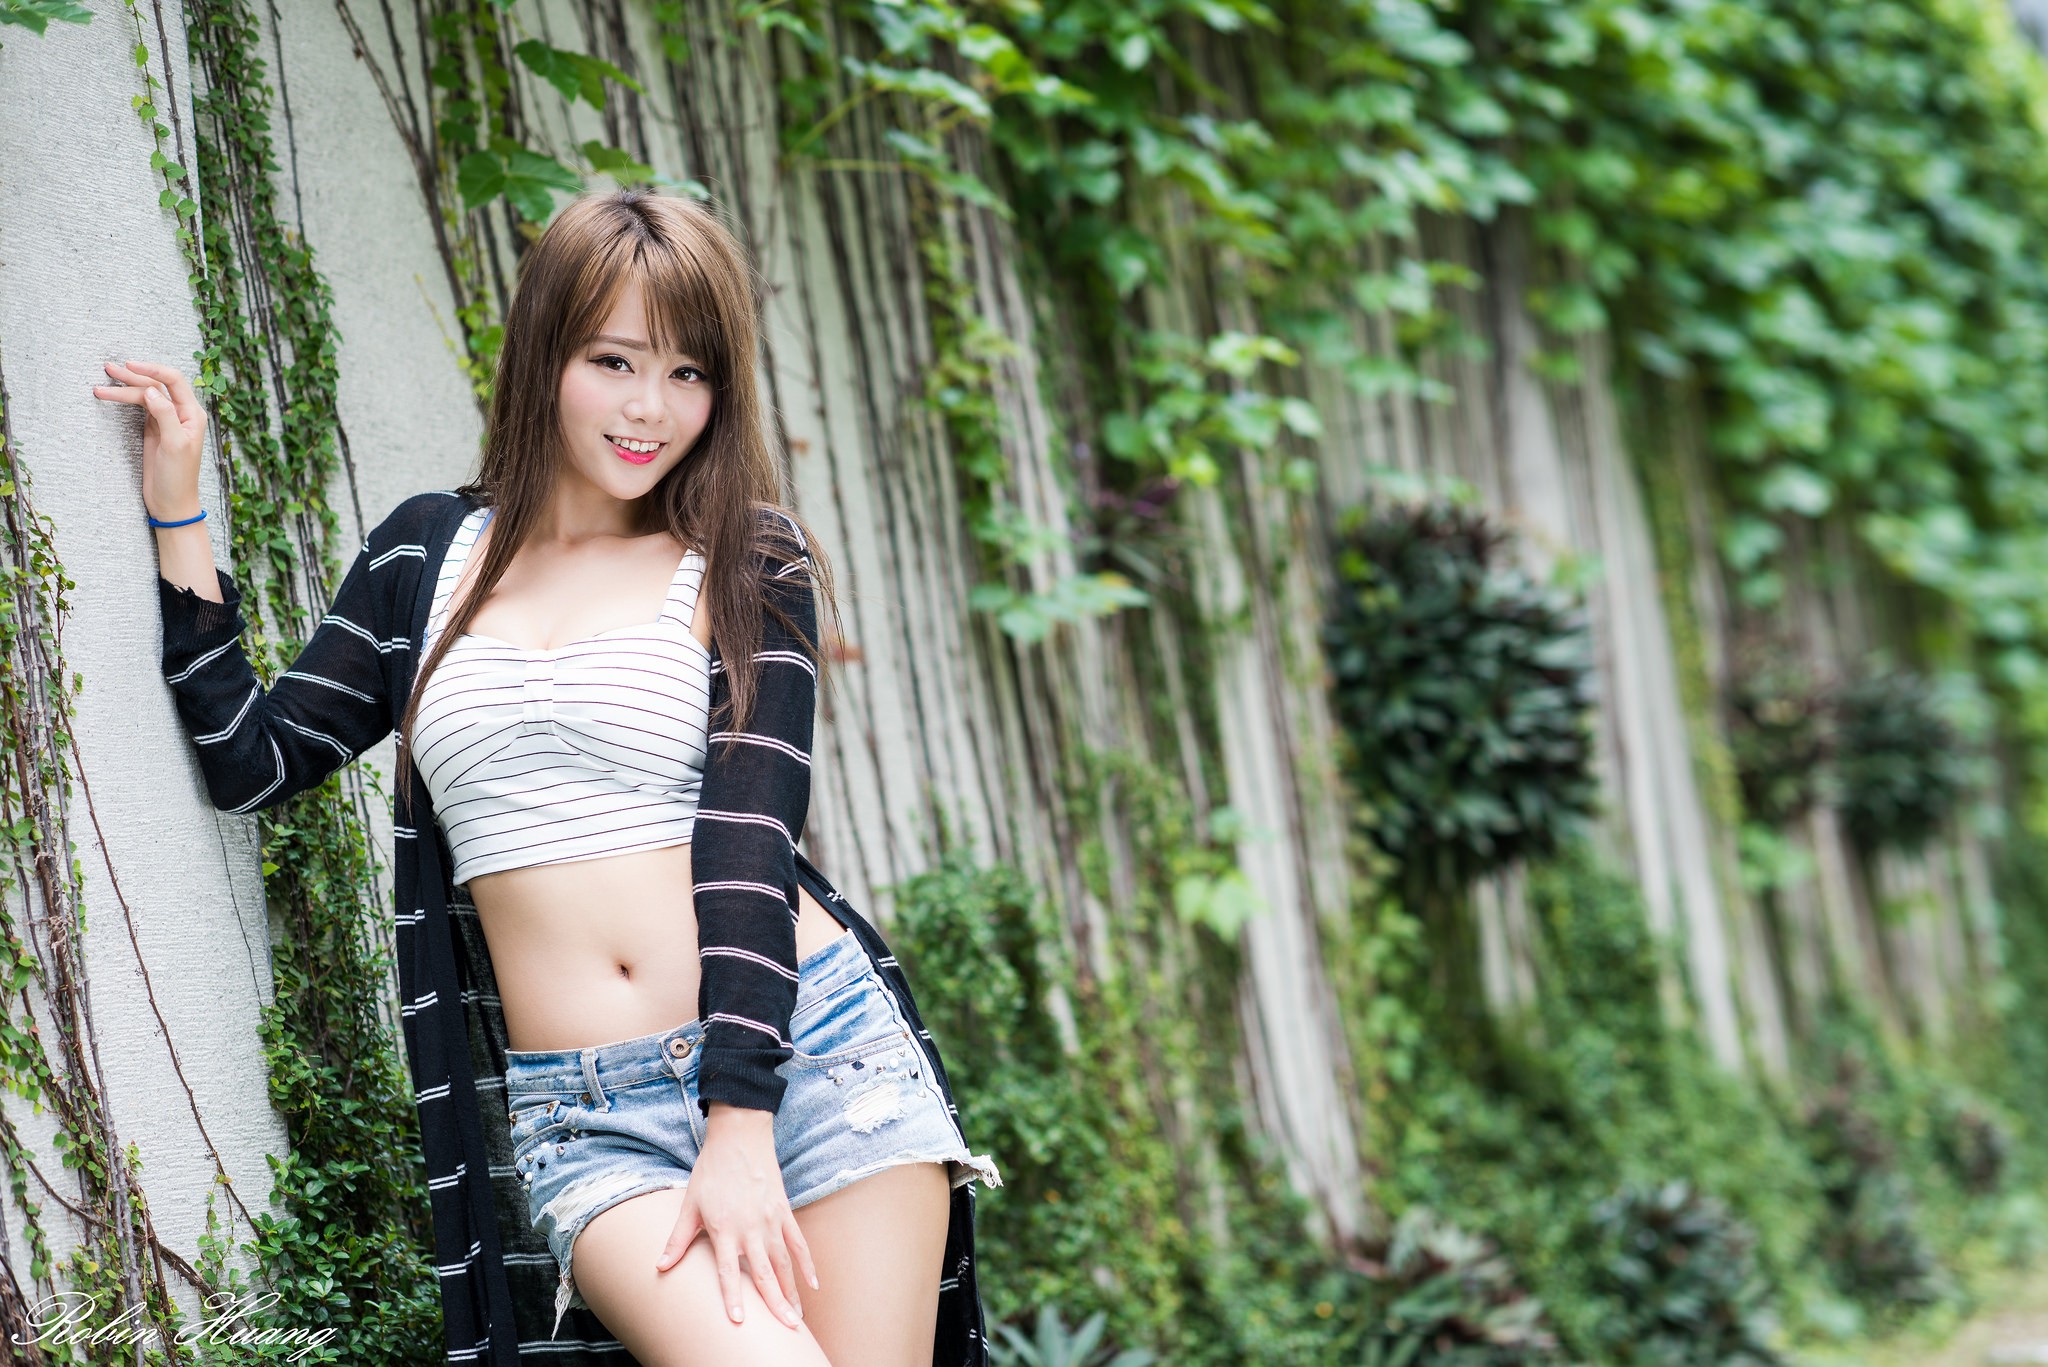 Crop Top Women Outdoors Brunette Long Hair Smiling Striped Clothing Sun Hui Tong 2048x1367